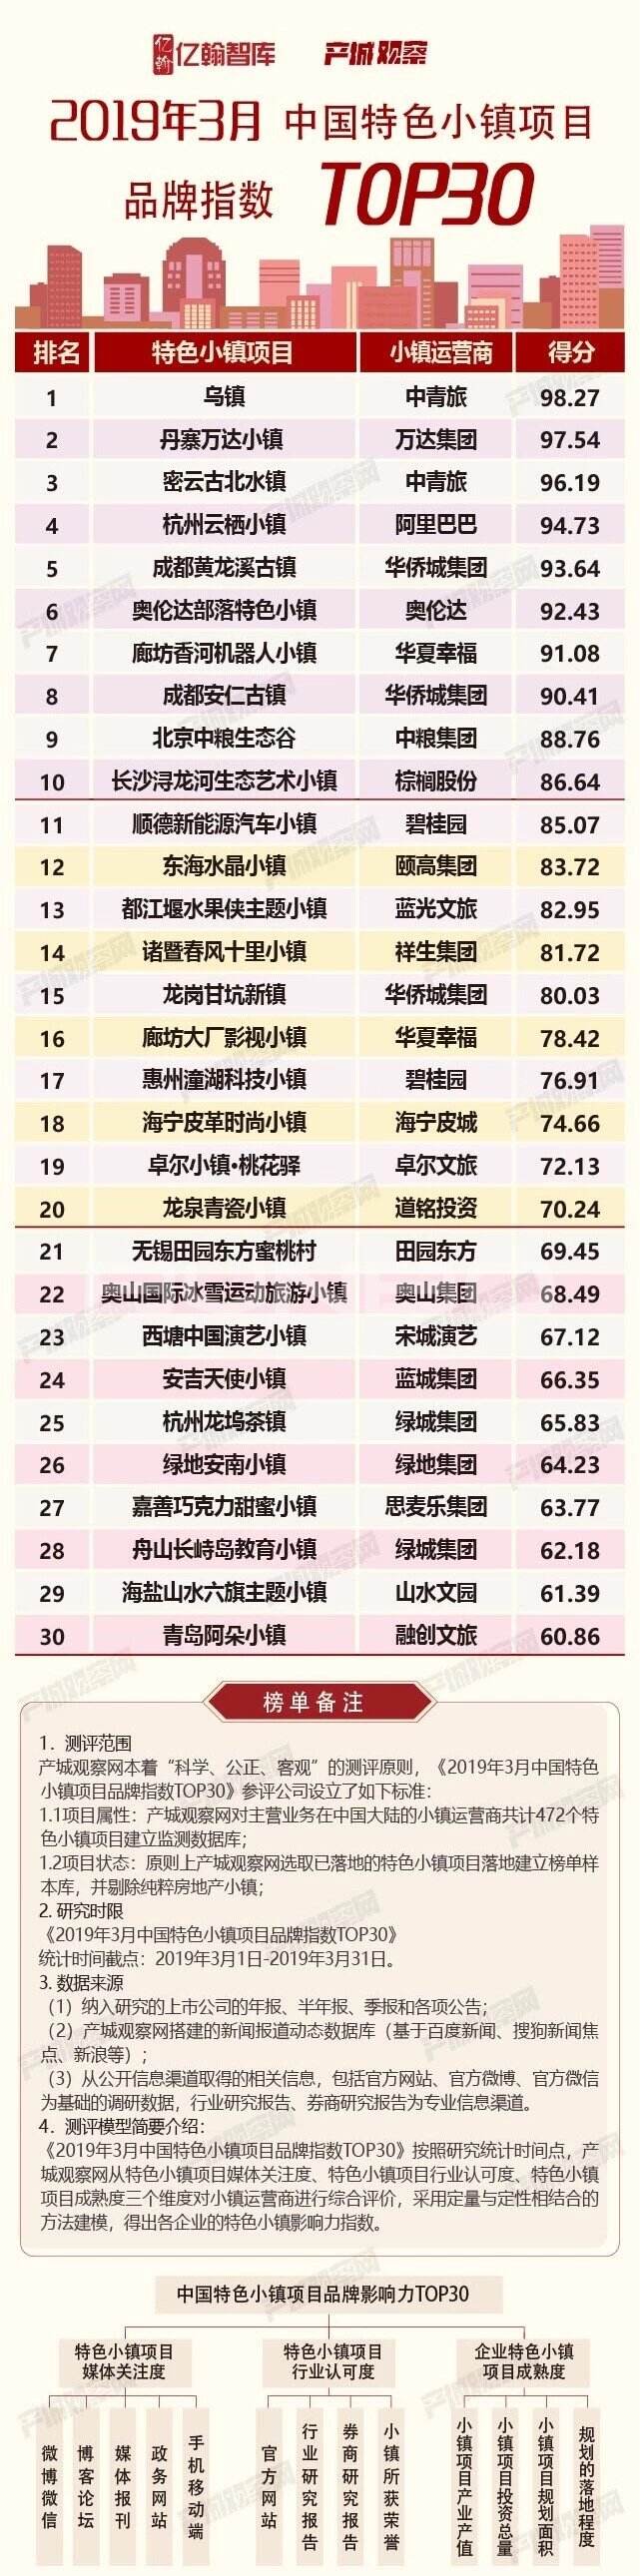 2019年3月中国特色小镇项目品牌指数TOP30